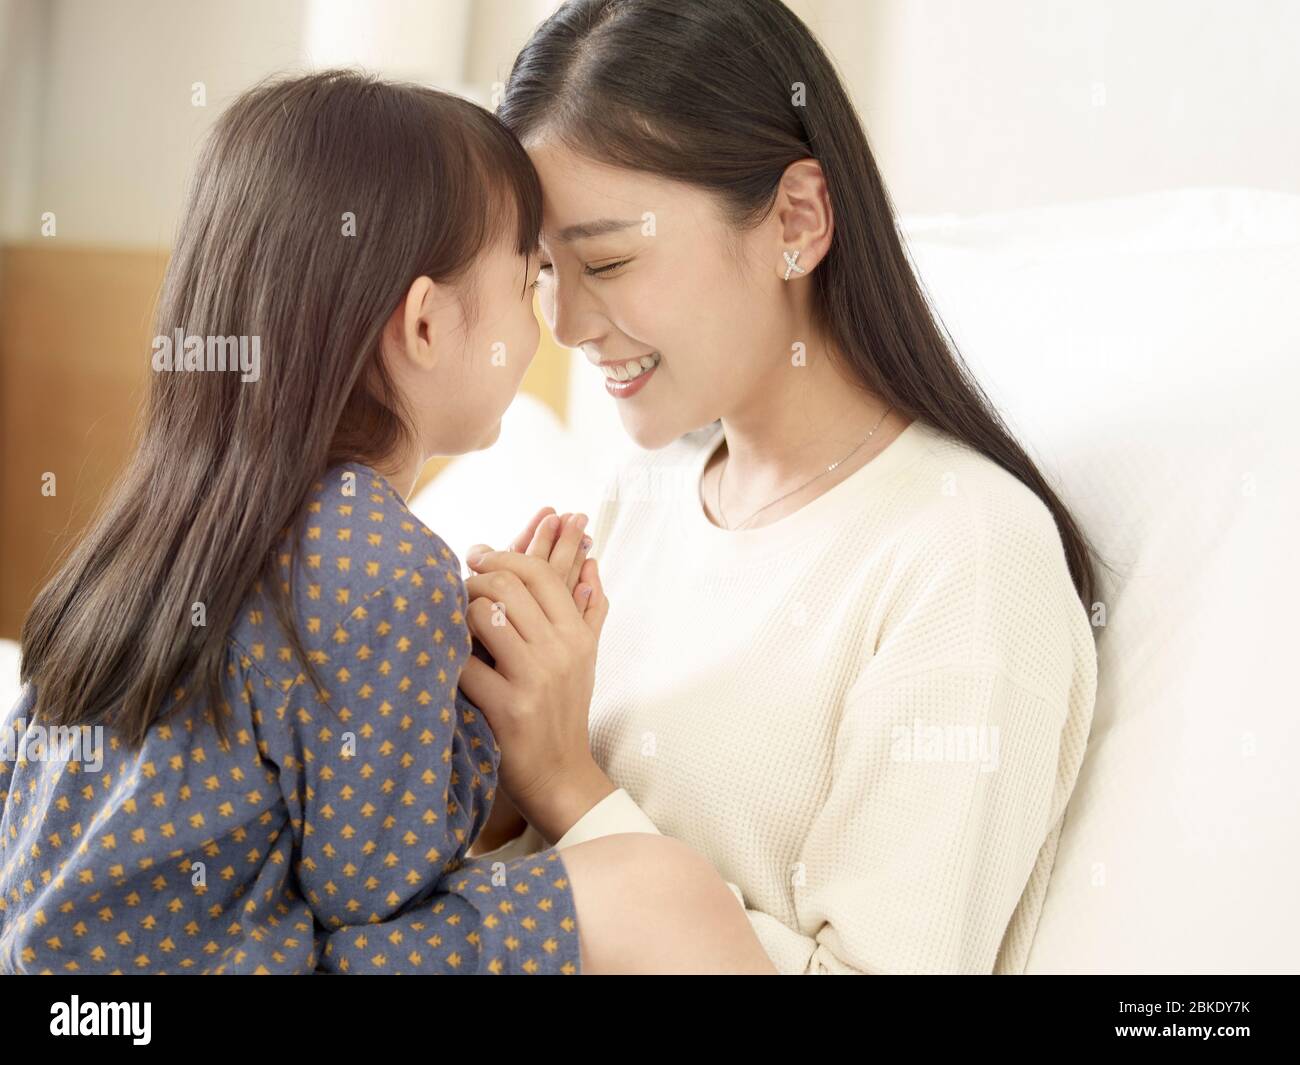 gros plan sur une mère asiatique affectueuse et une fille mignonne assise au lit chez elle Banque D'Images